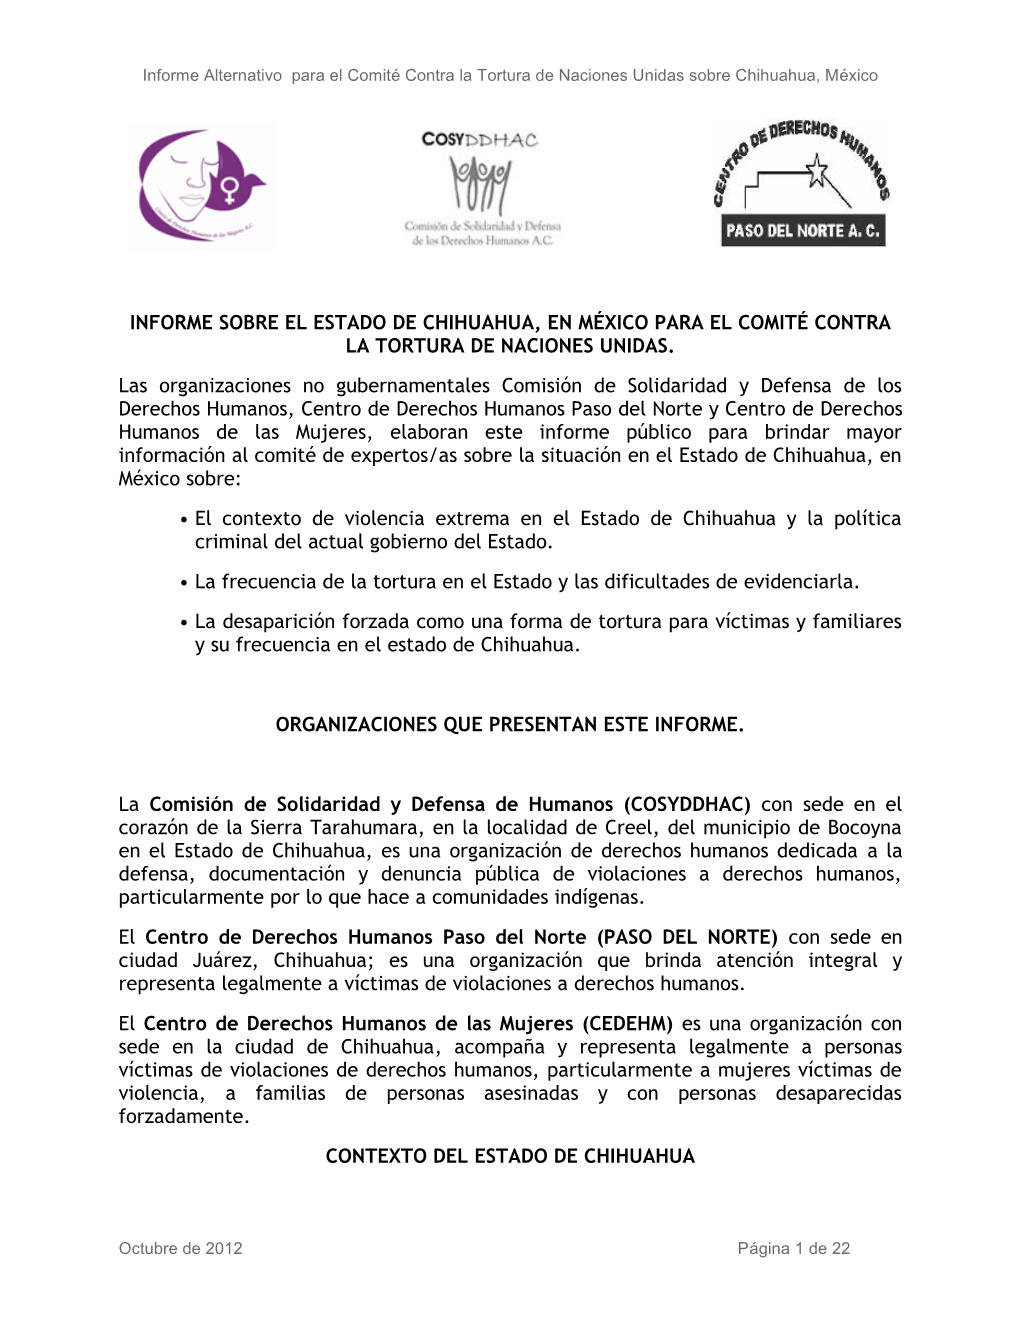 Informe Sobre El Estado De Chihuahua, En México Para El Comité Contra La Tortura De Naciones Unidas